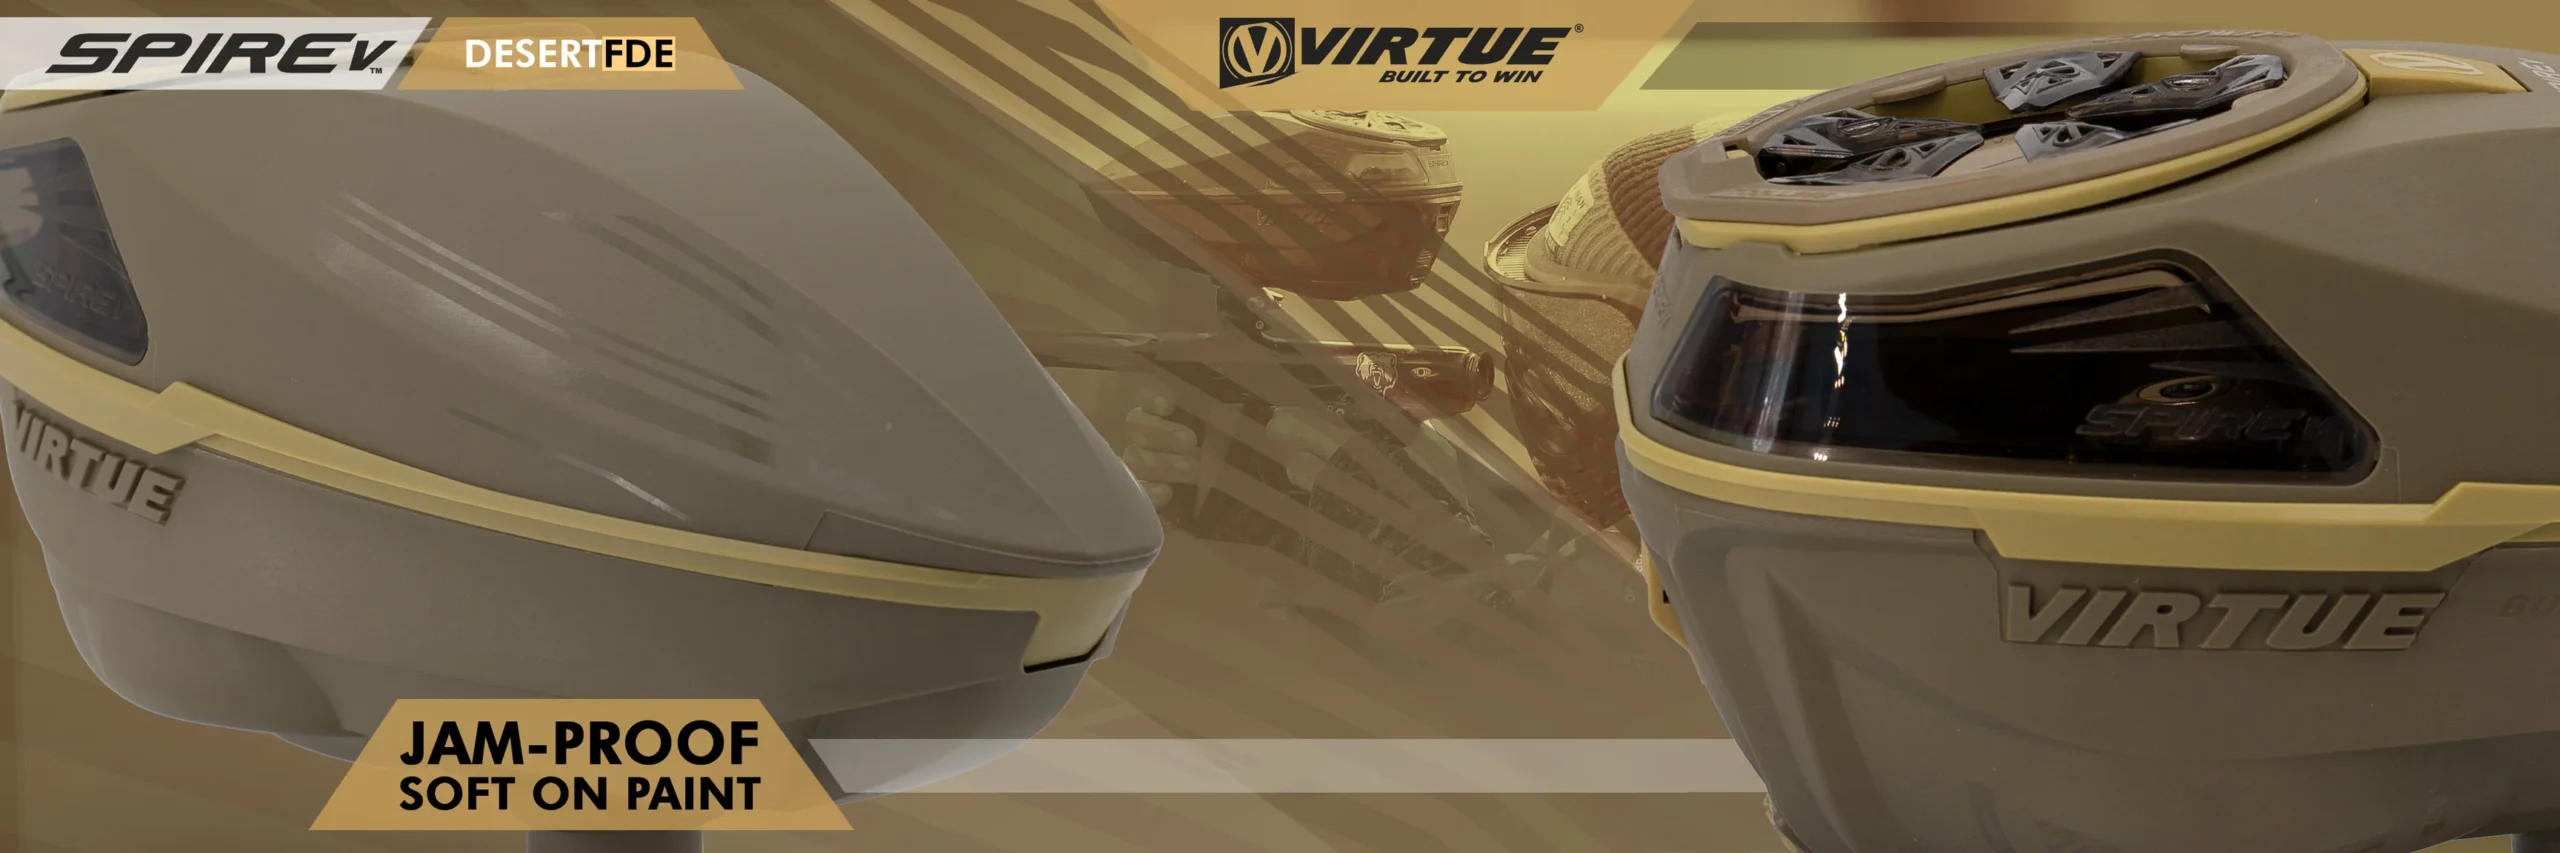 Virtue SpireV - Desert FDE